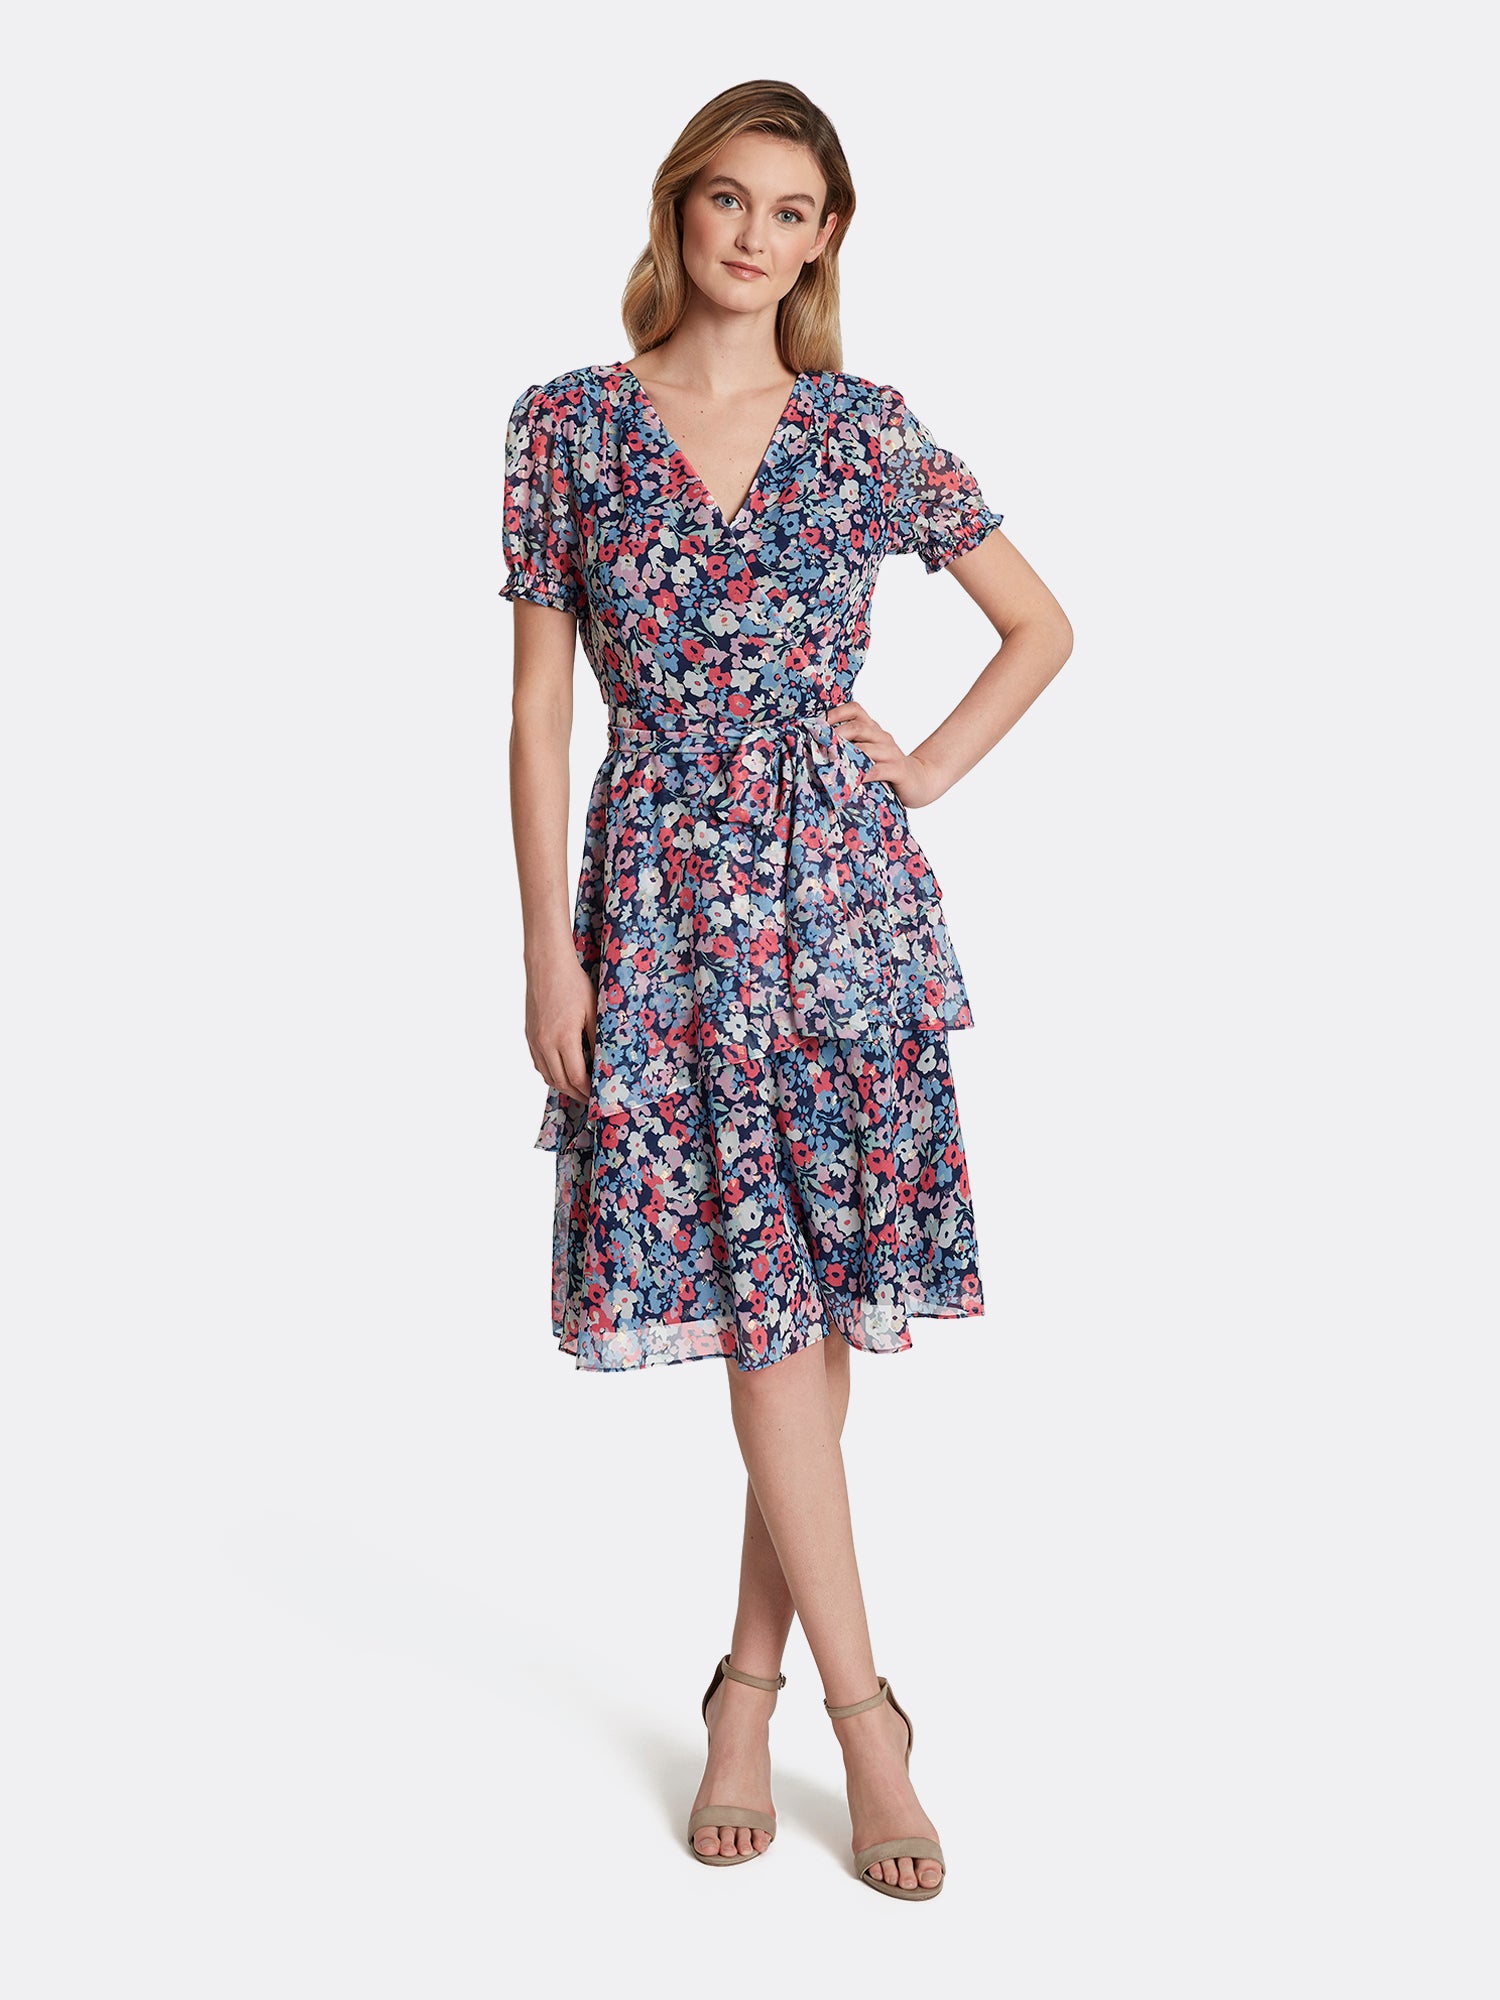 Floral Chiffon Tiered Dress Flash Sales ...